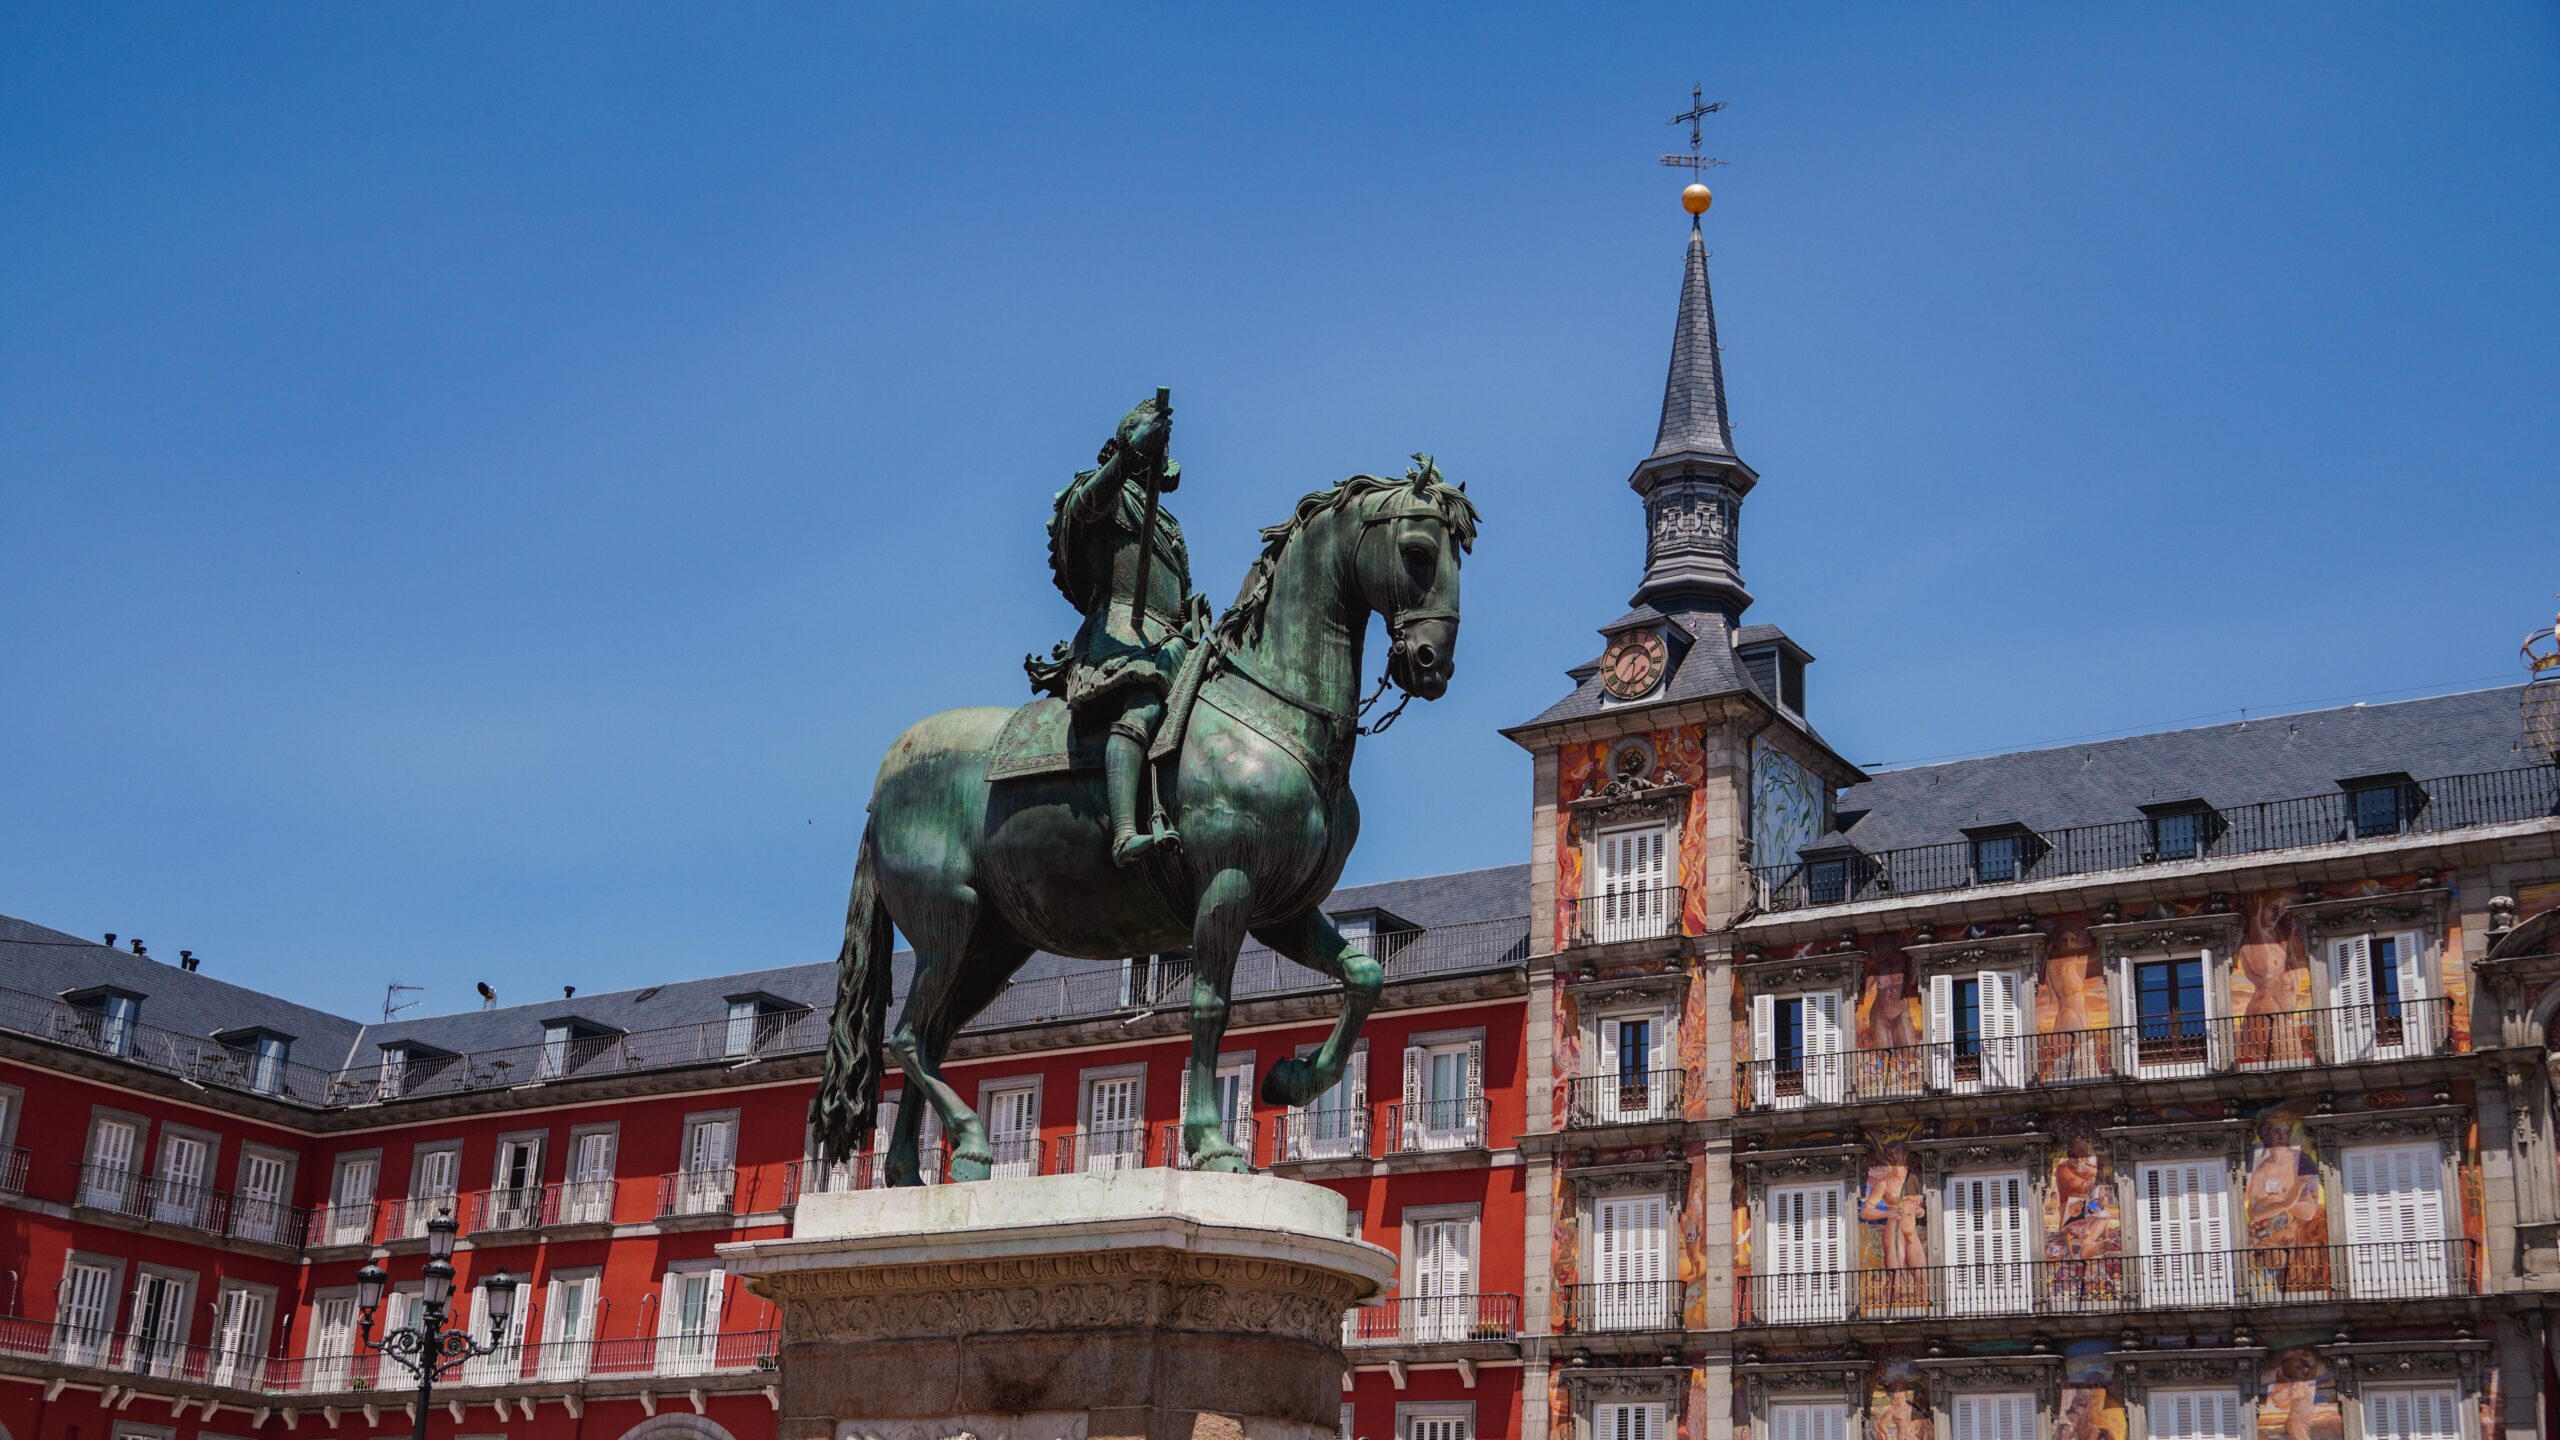 The Casa de la Panadería and Statue of Philip III in Plaza Mayor, Madrid